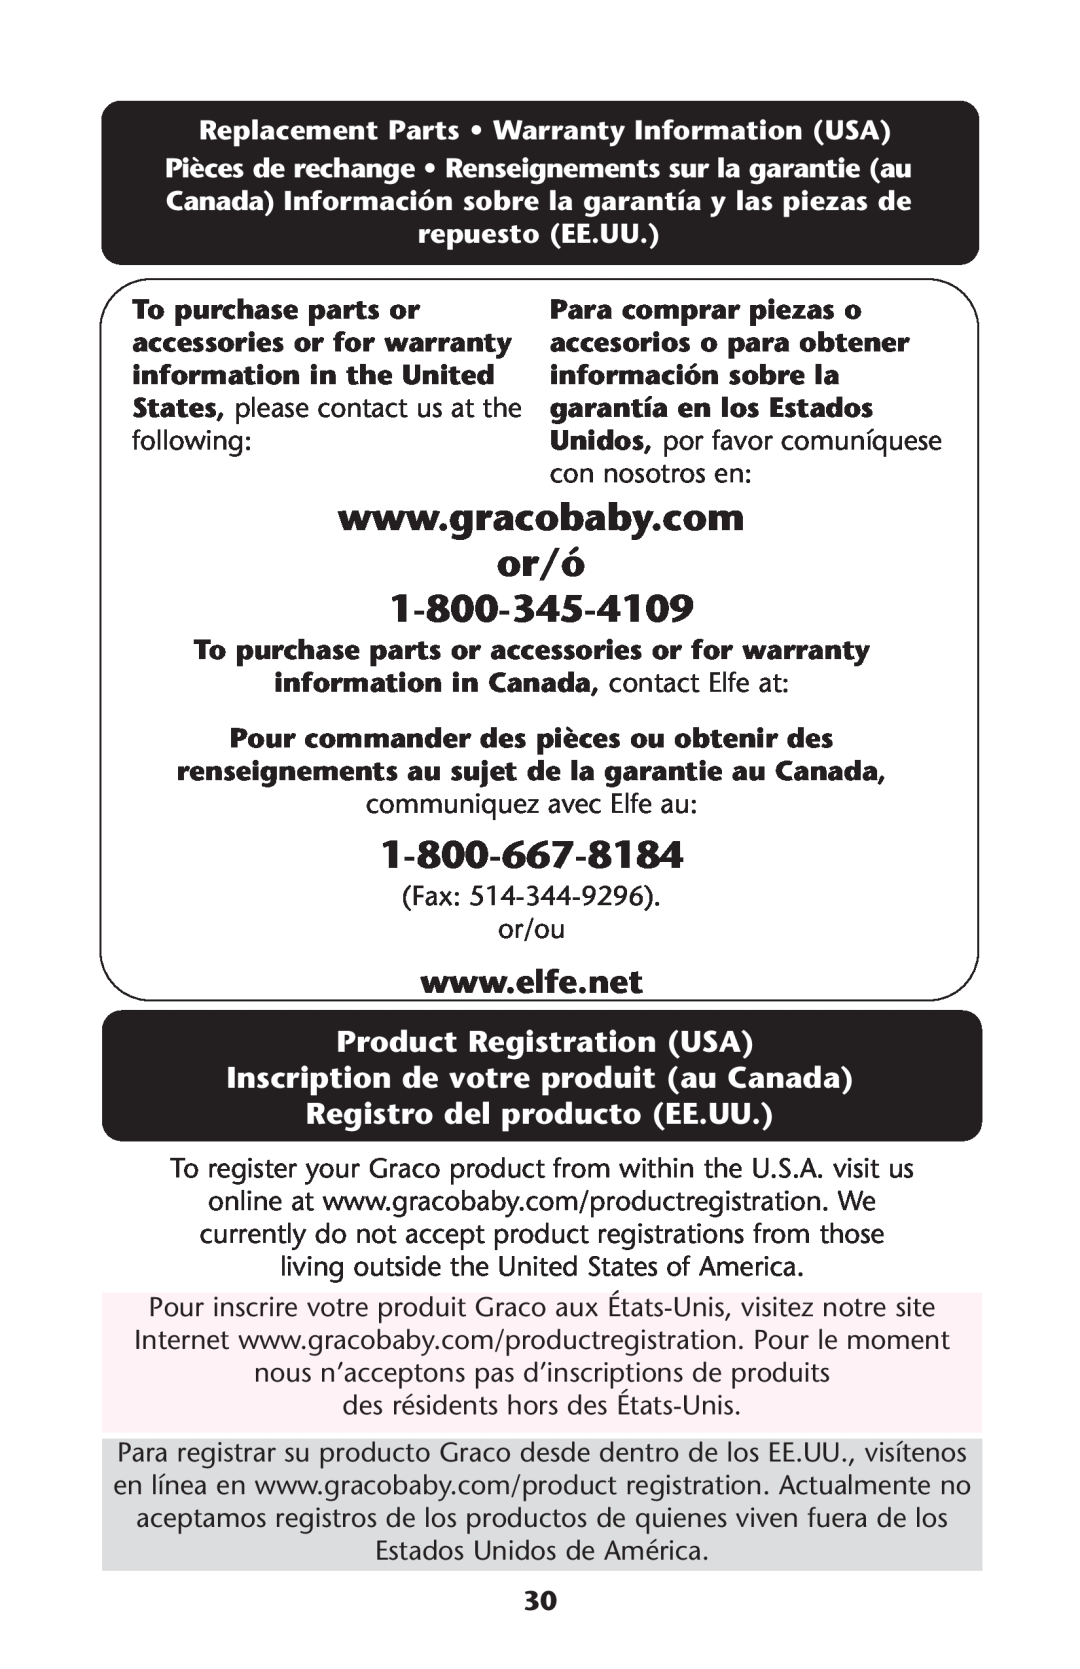 Graco CozyDinette manual or/ó, Product Registration USA Inscription de votre produit au Canada, Registro del producto EE.UU 